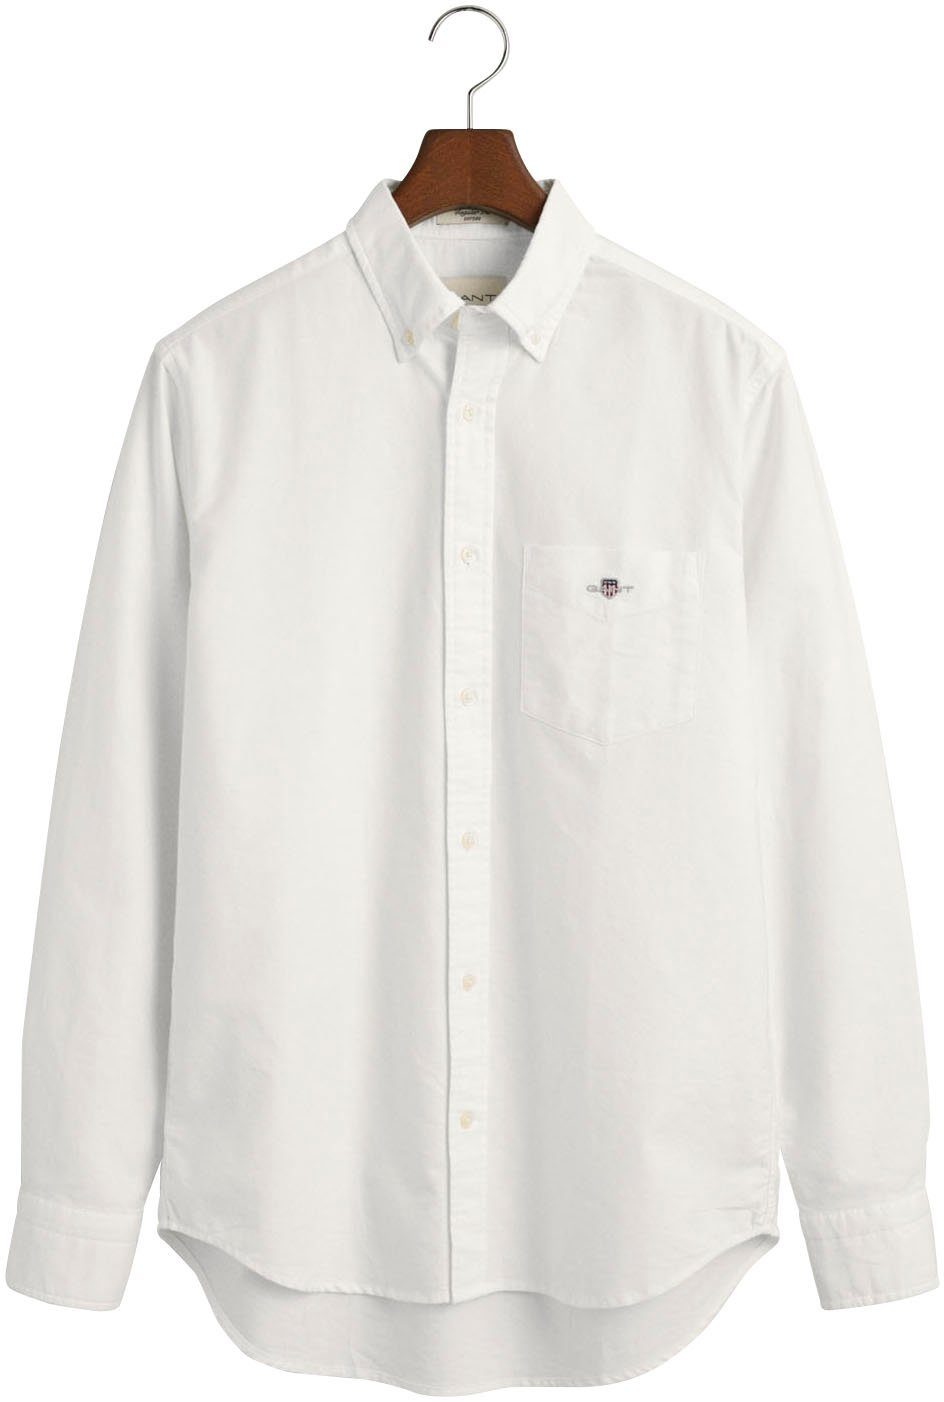 Gant Hemd Oxford REG OXFORD white SHIRT Businesshemd Regular Fit